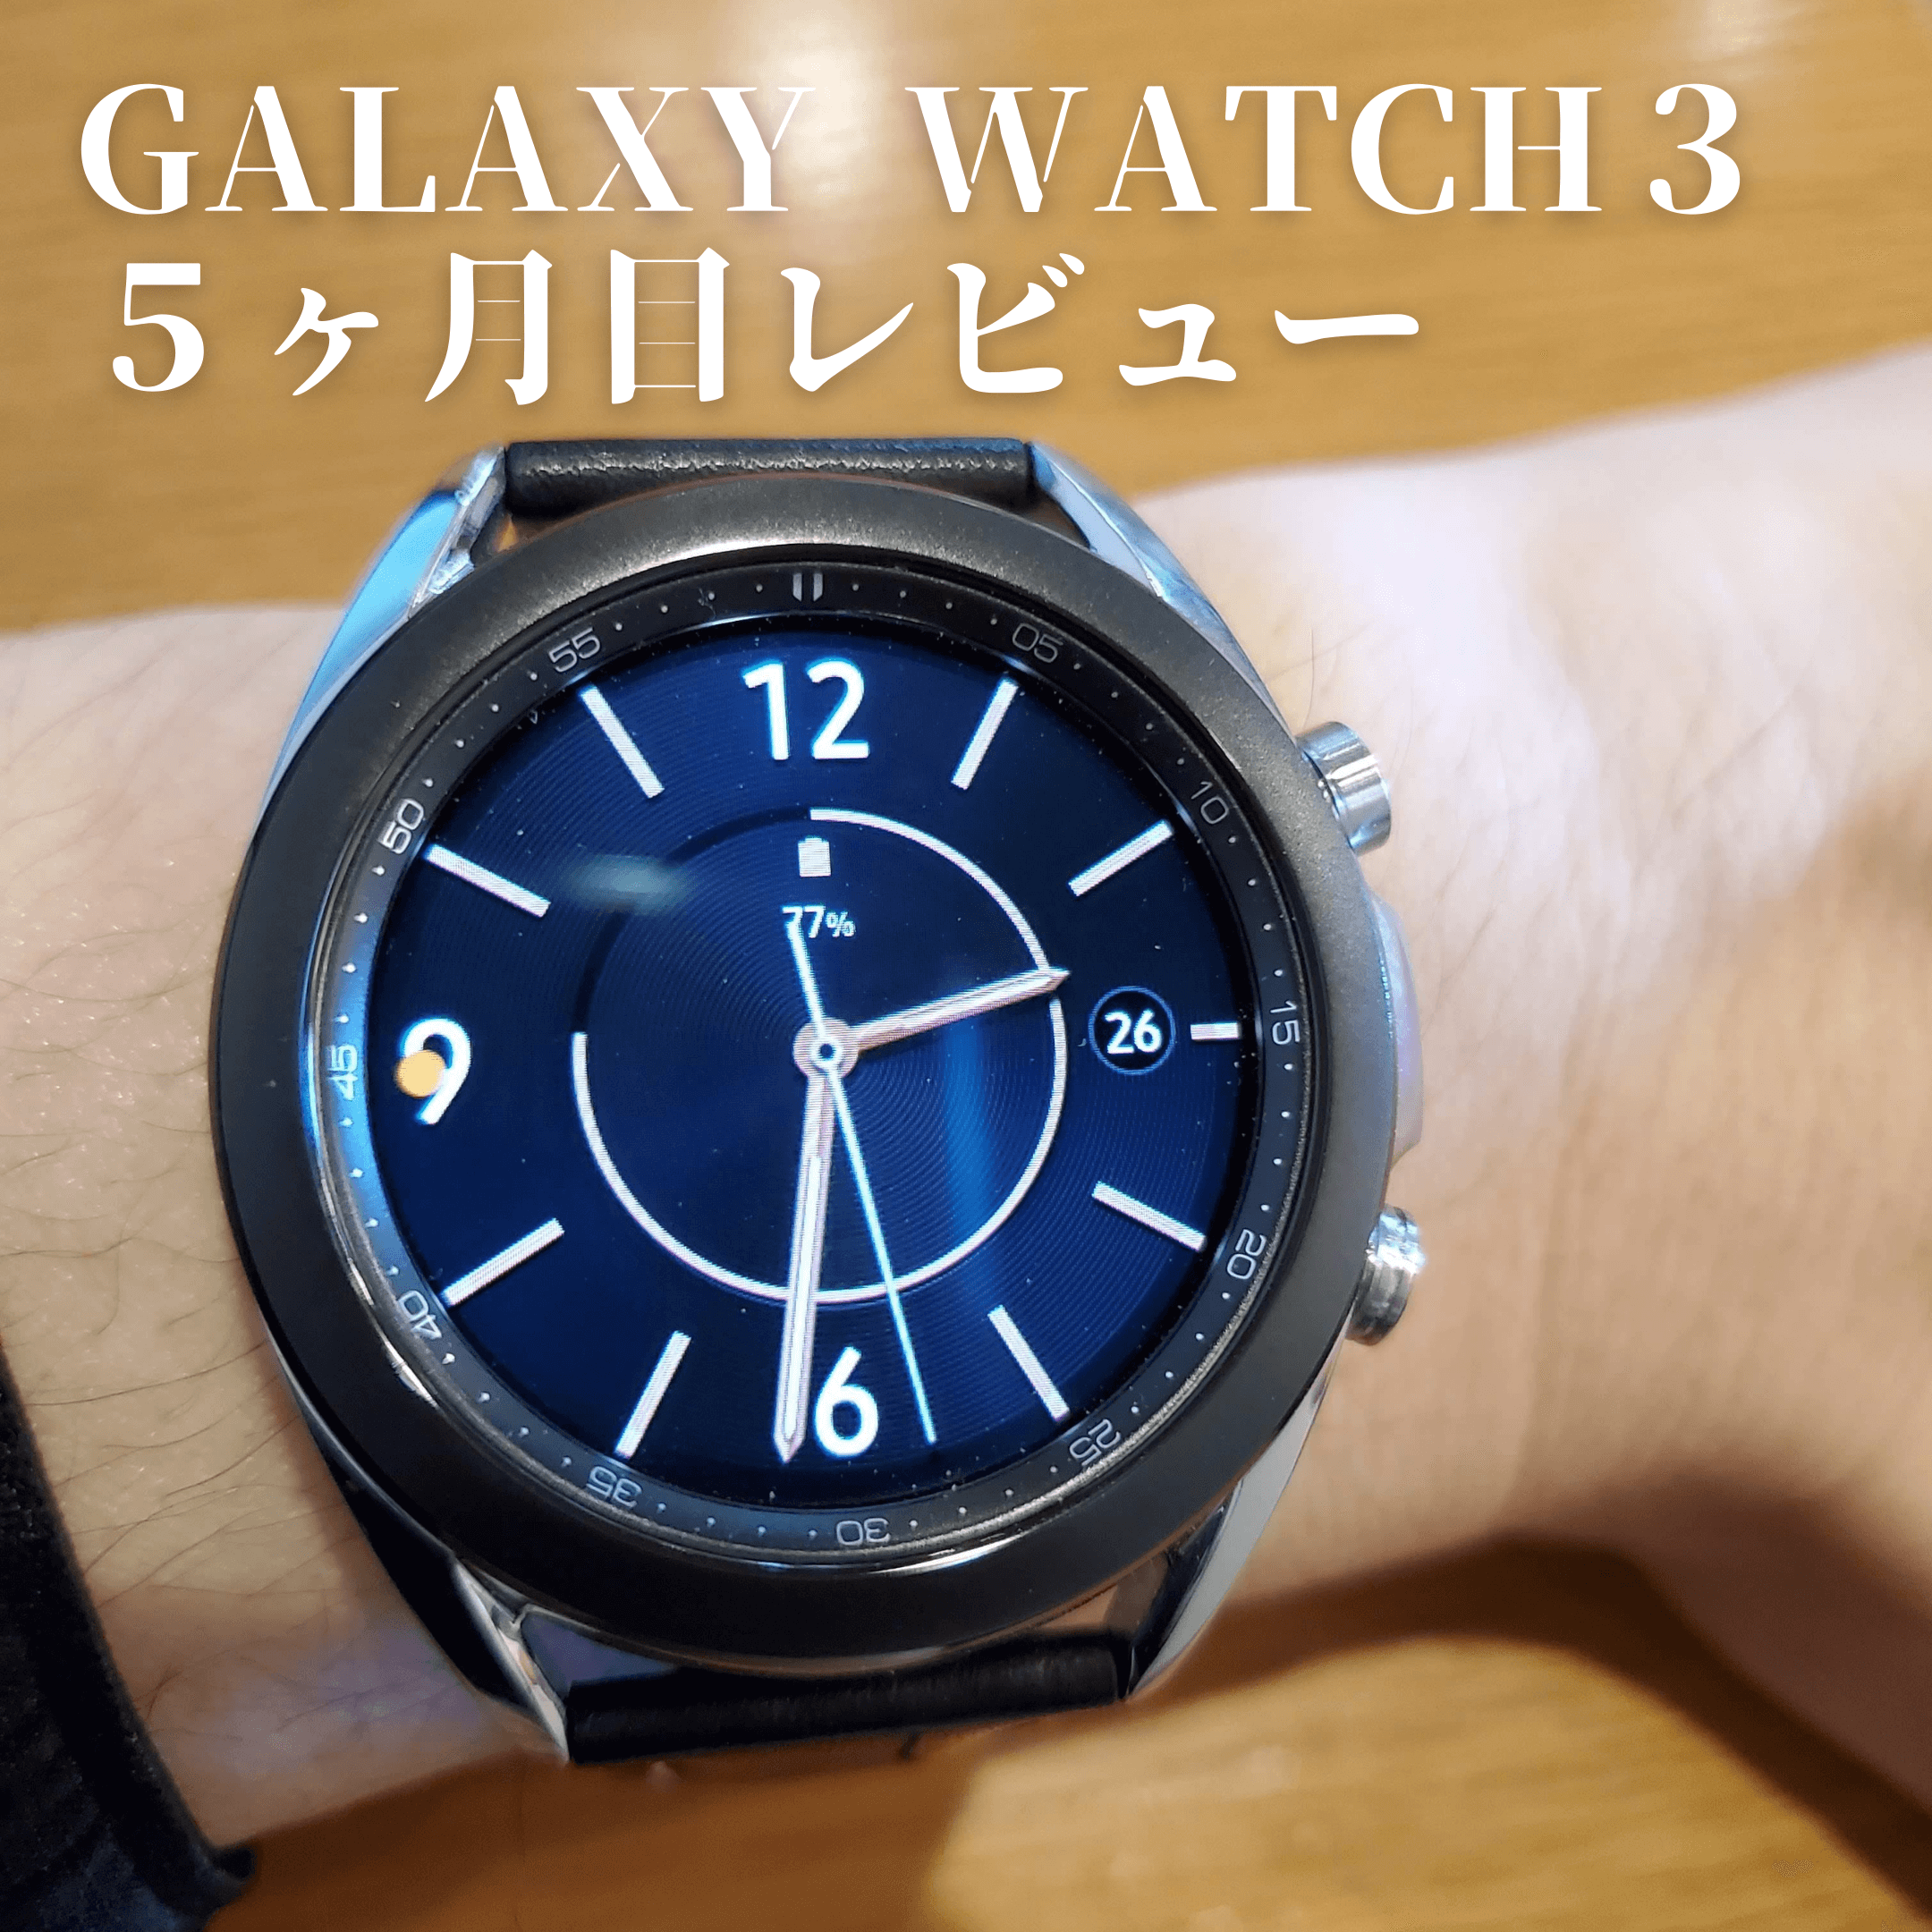 Galaxywatch3